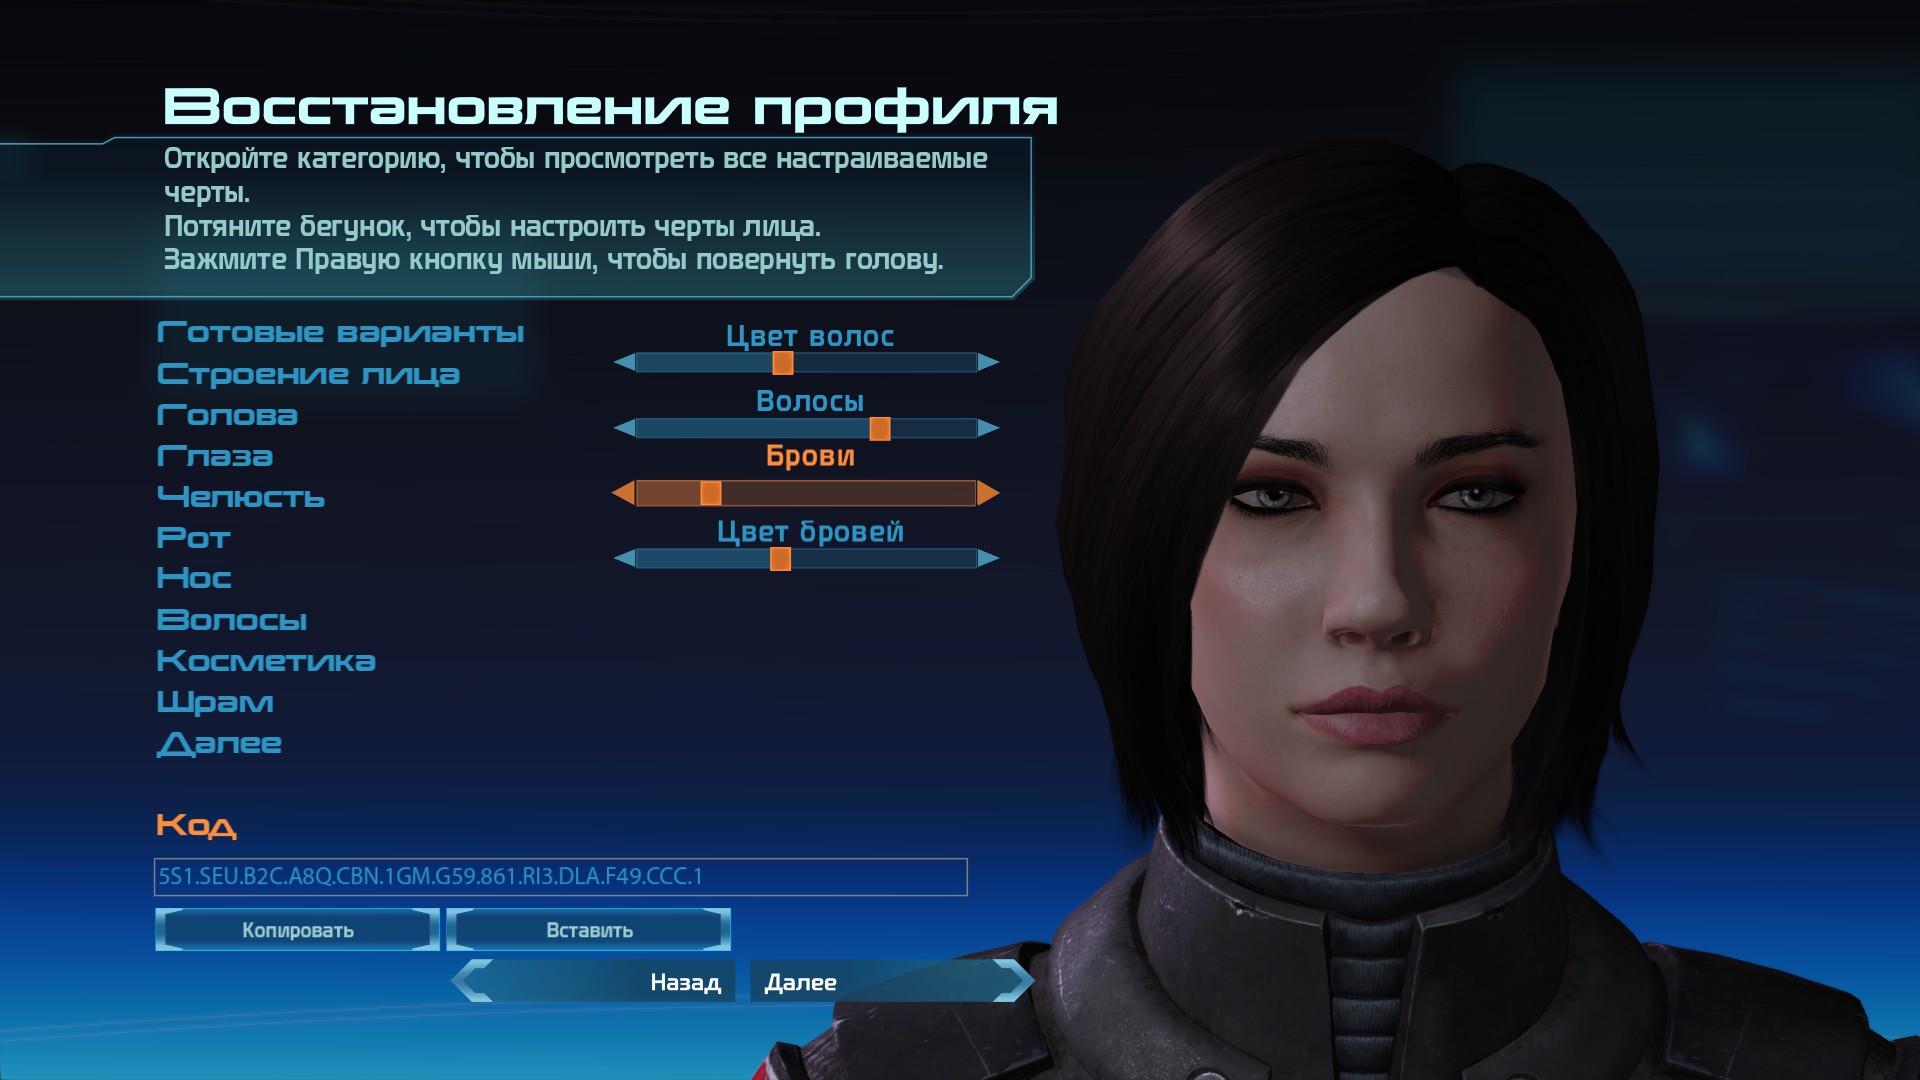 Mass Effect ™ Legendary Edition - Faced Codes 8 - SteamLists.com